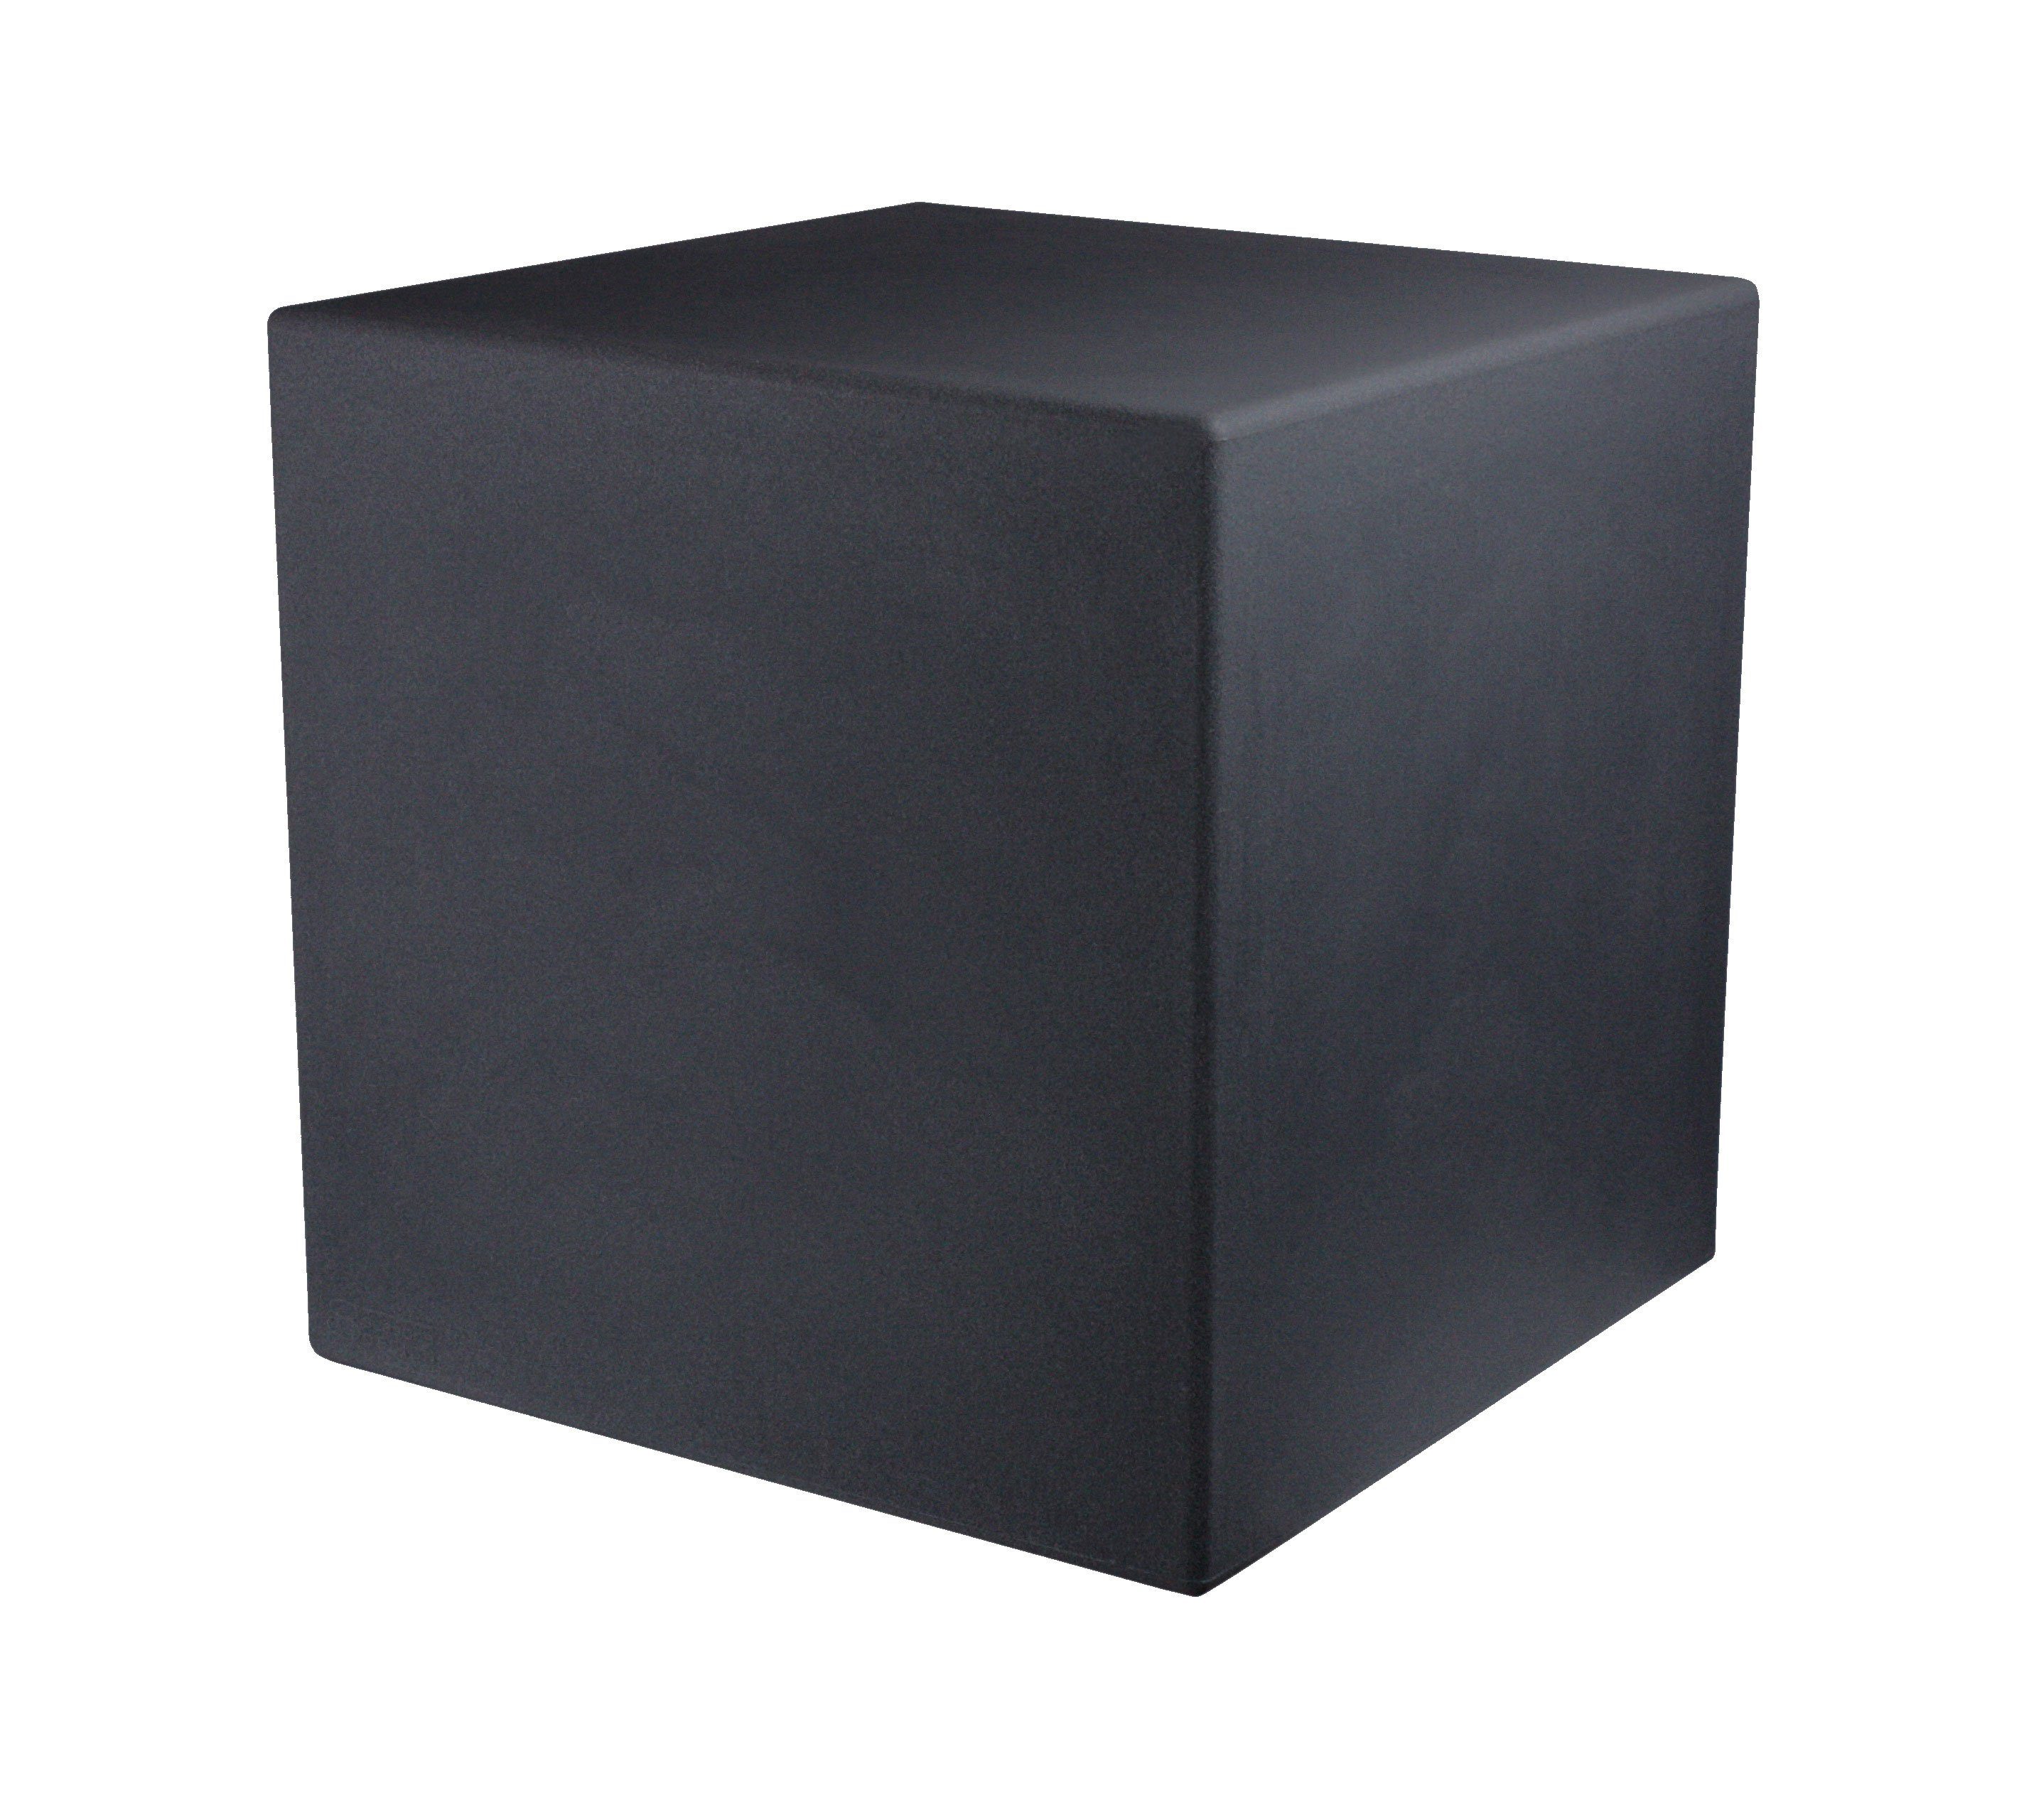 8 seasons design LED Würfel Shining Cube, LED WW, LED wechselbar, Warmweiß, 33 cm anthrazit für In- und Outdoor